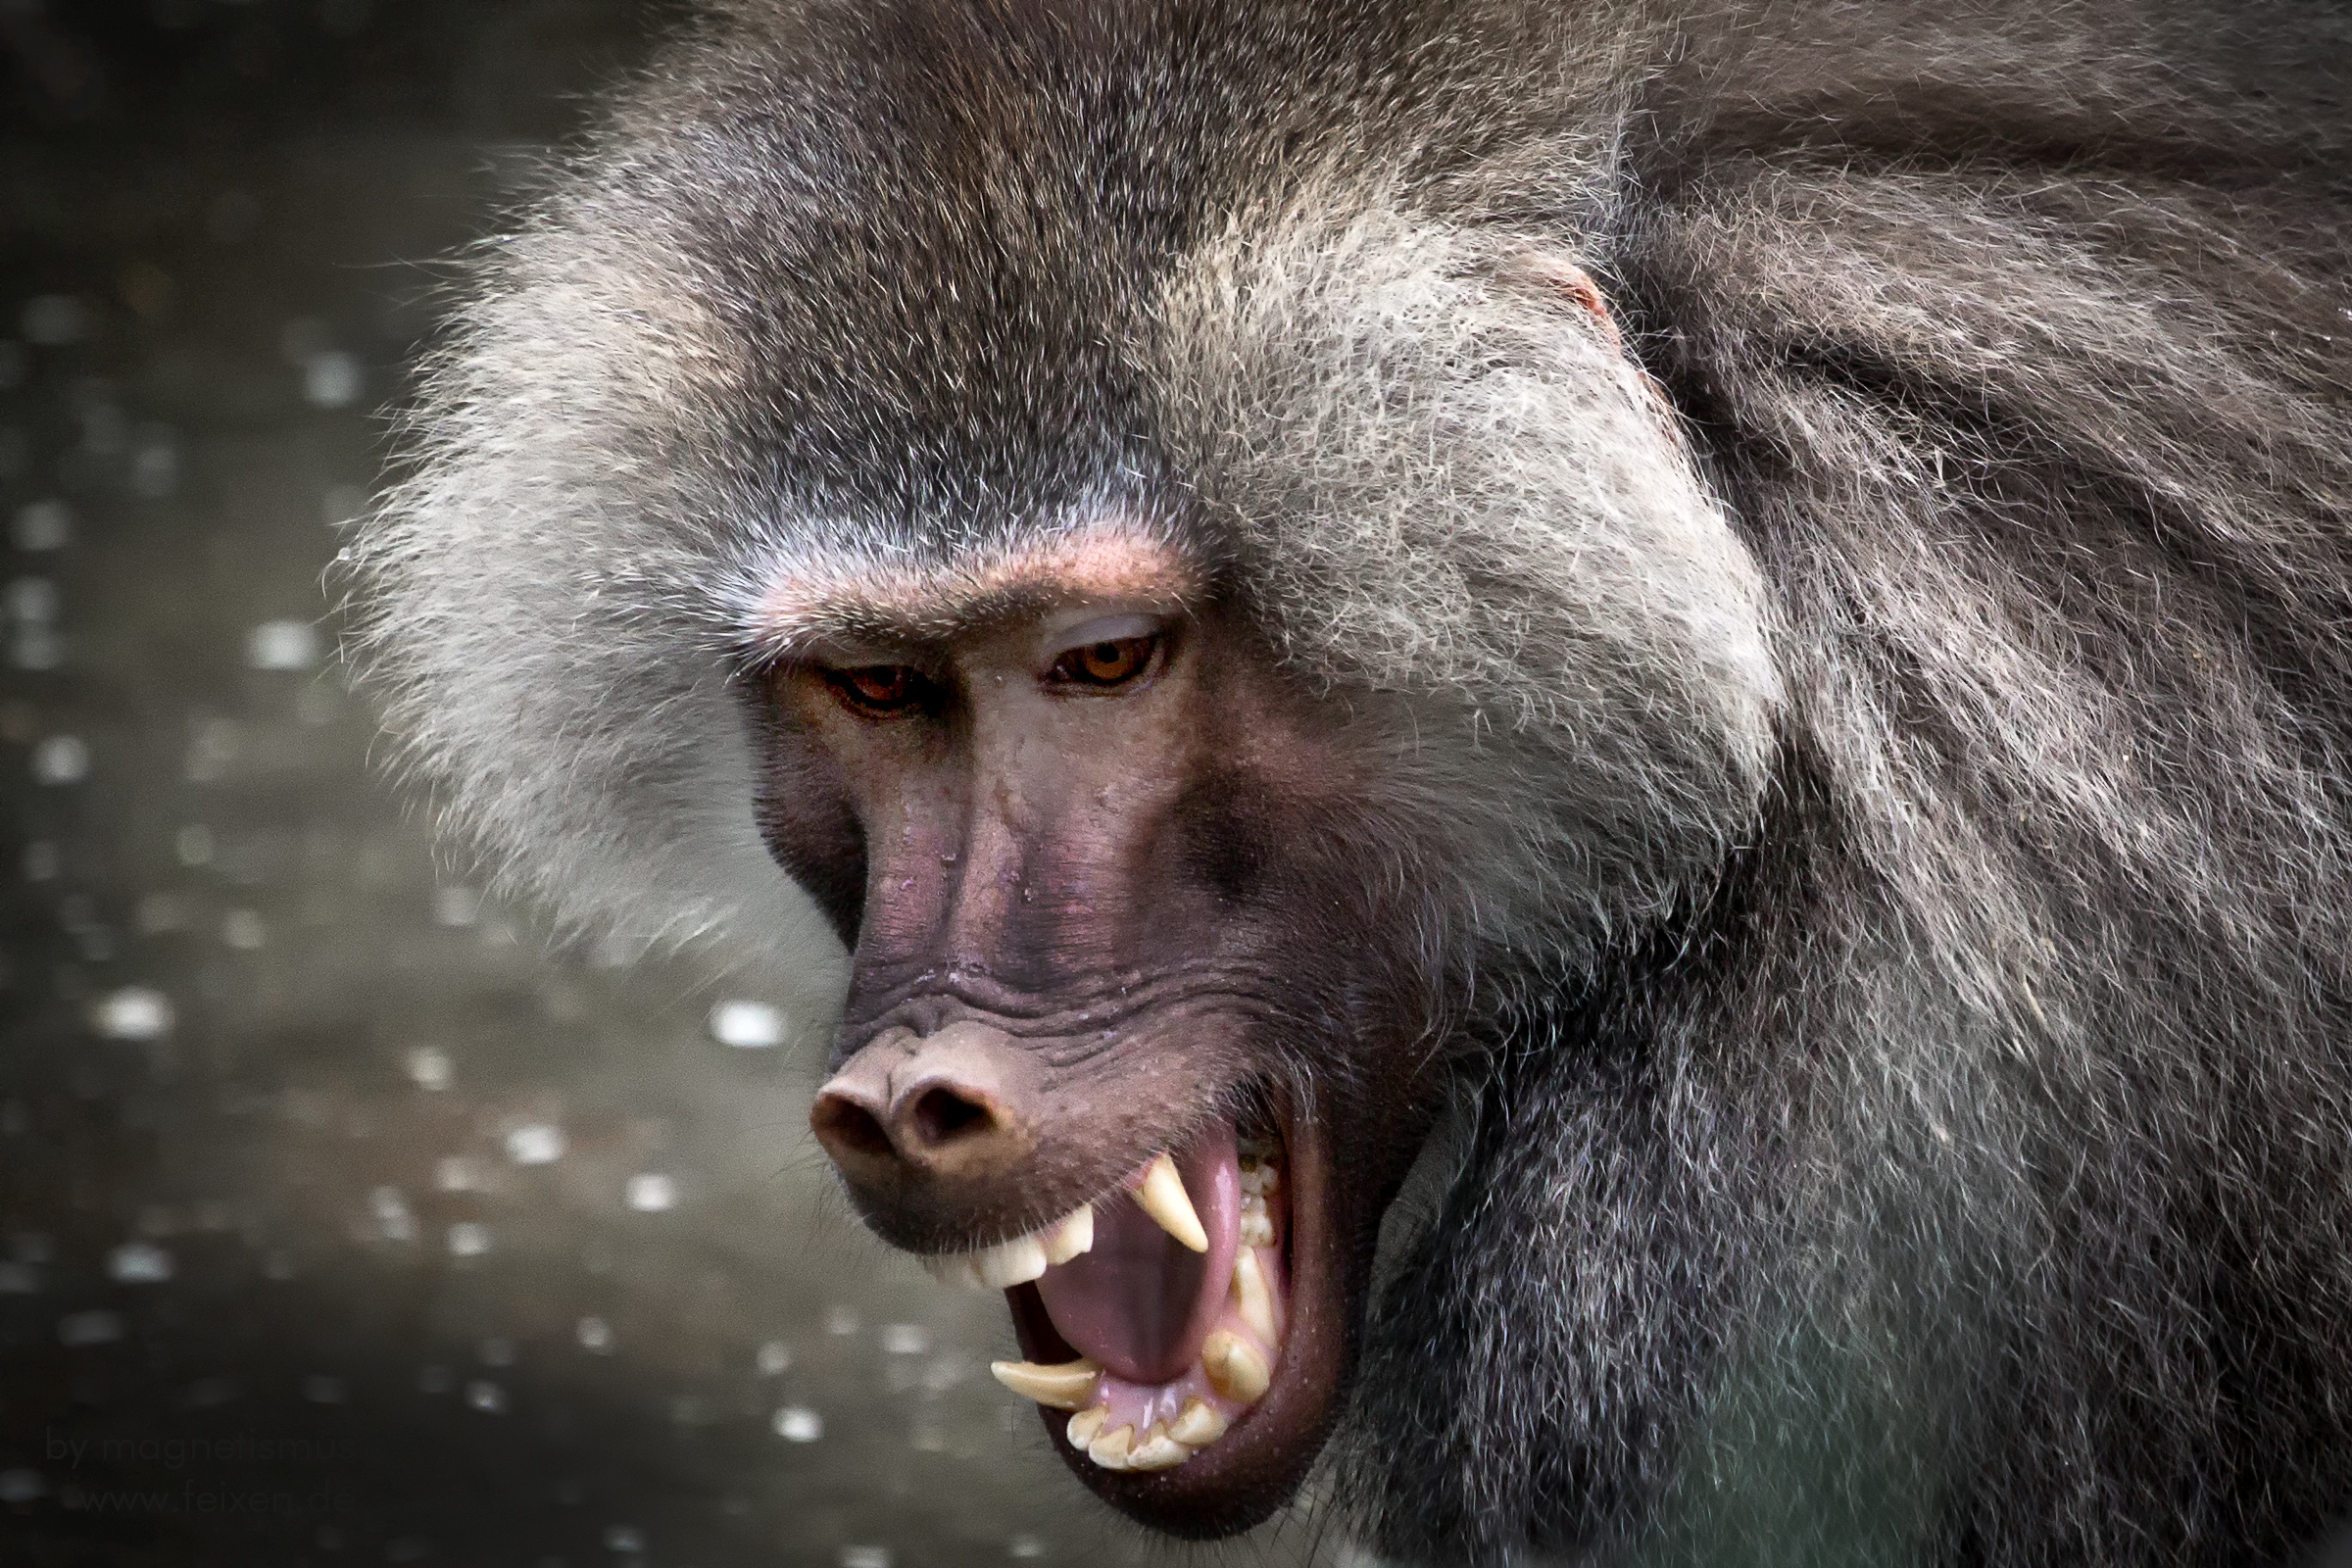 angry baboon